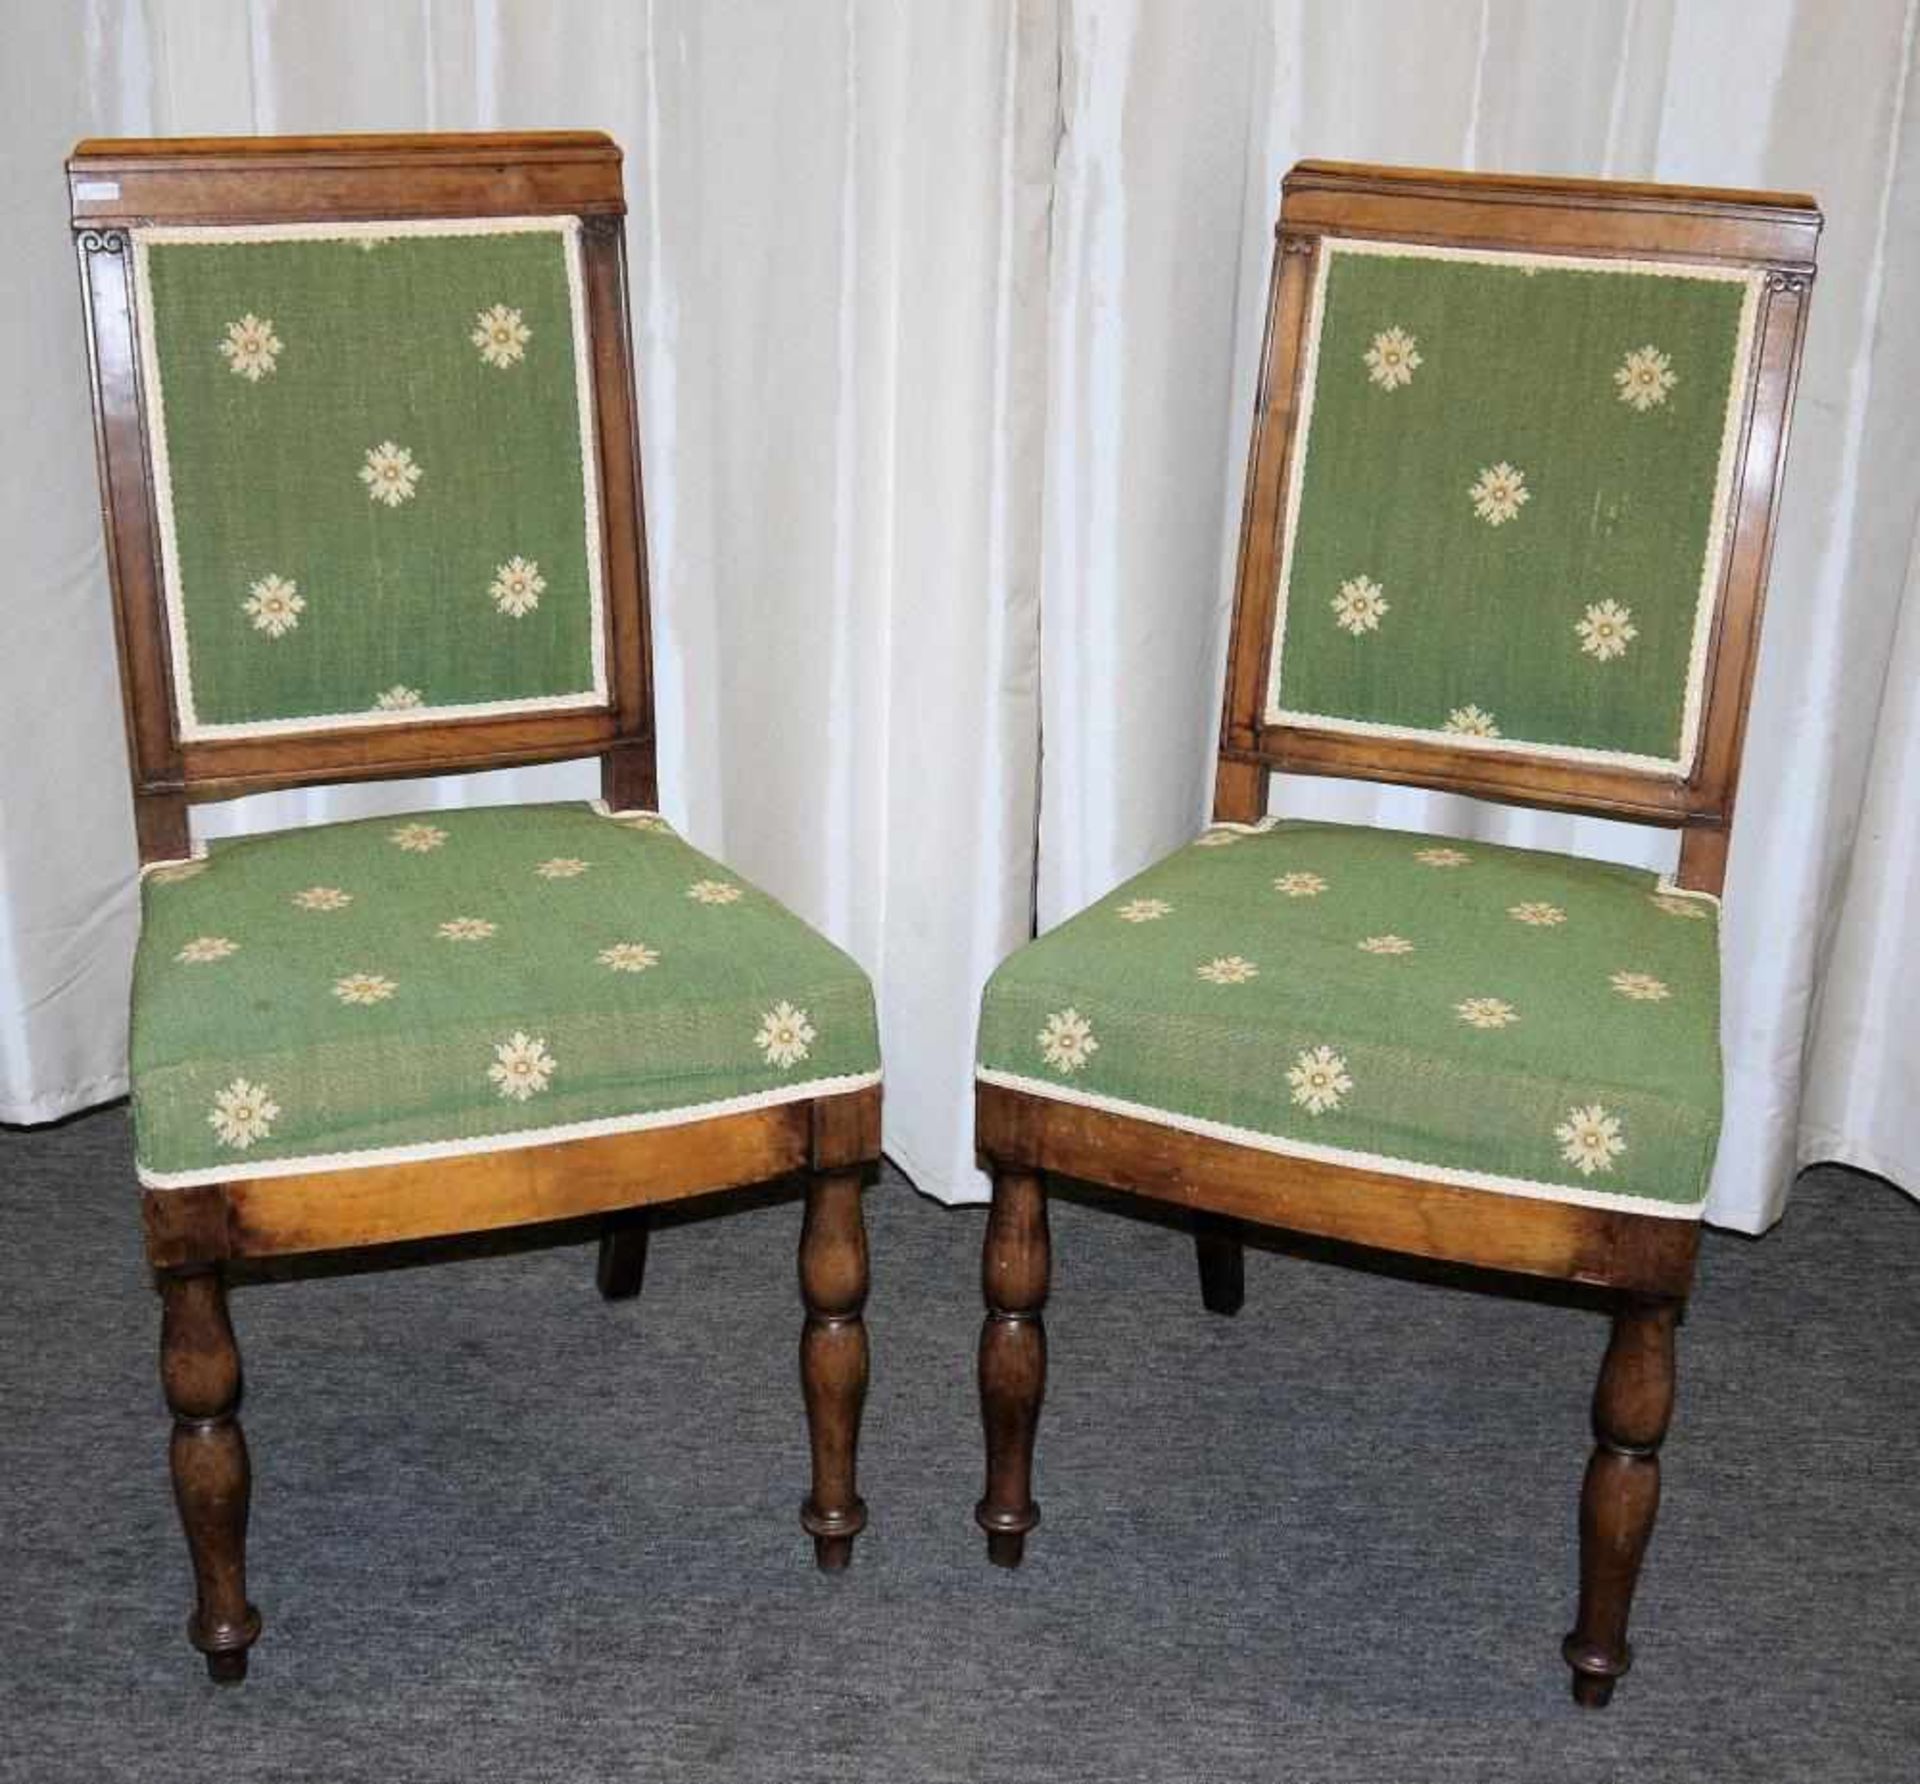 Zwei Stühle des Empire, Frankreich, Anfang 19. Jh. Gegenstücke zweier Speisezimmerstühle aus